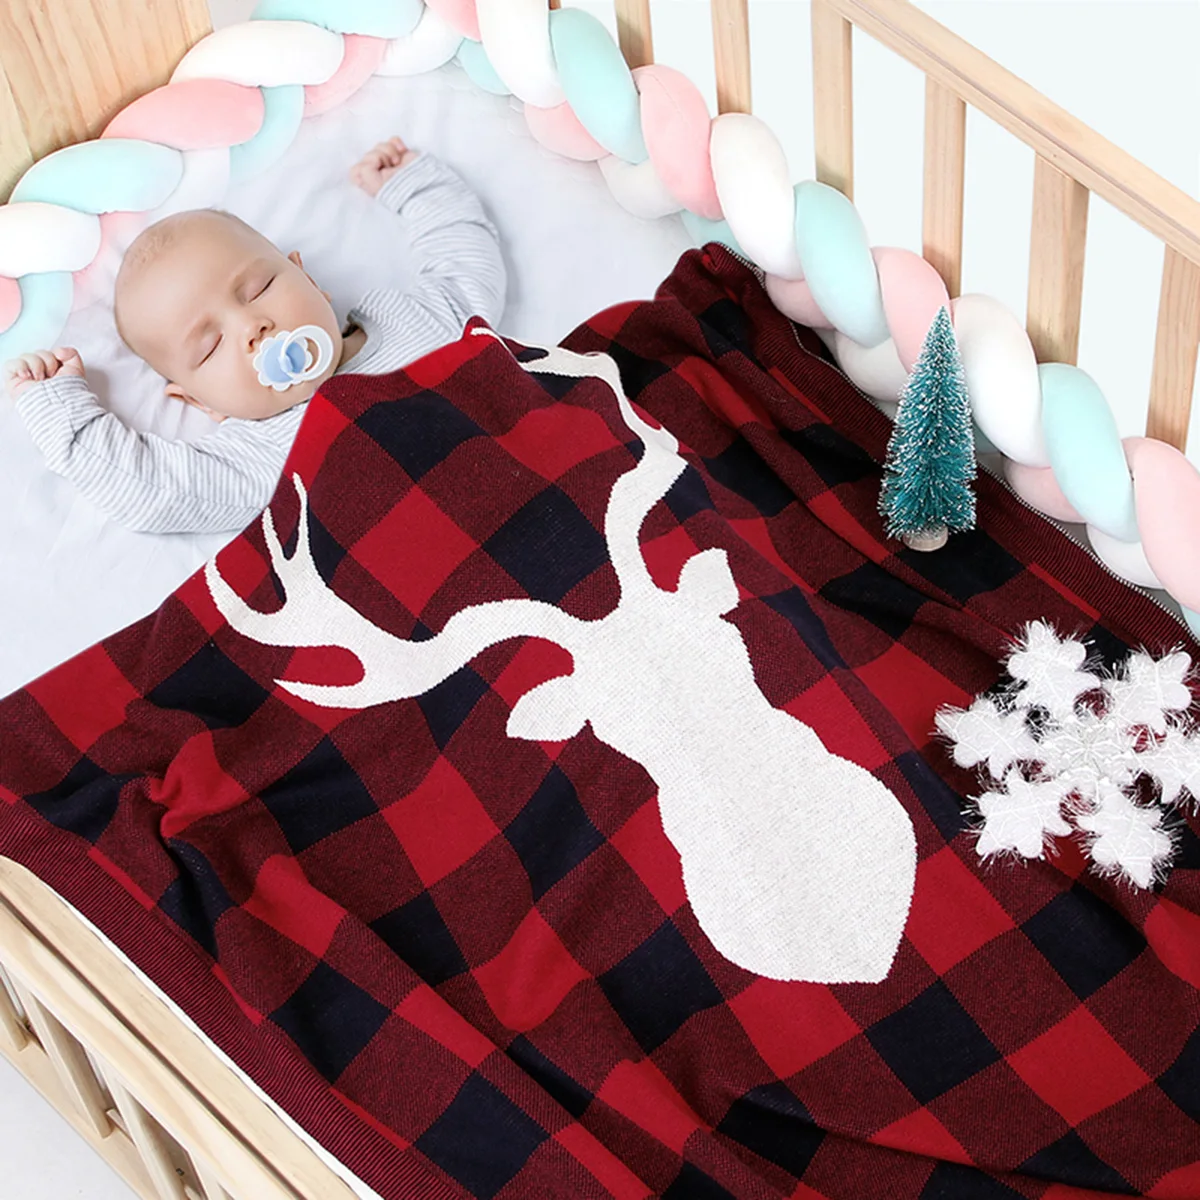 

1 Слои 100% хлопок муслин детское одеяло для новорожденных пеленание супер удобные постельные принадлежности Одеяла для пеленания Обёрточна...